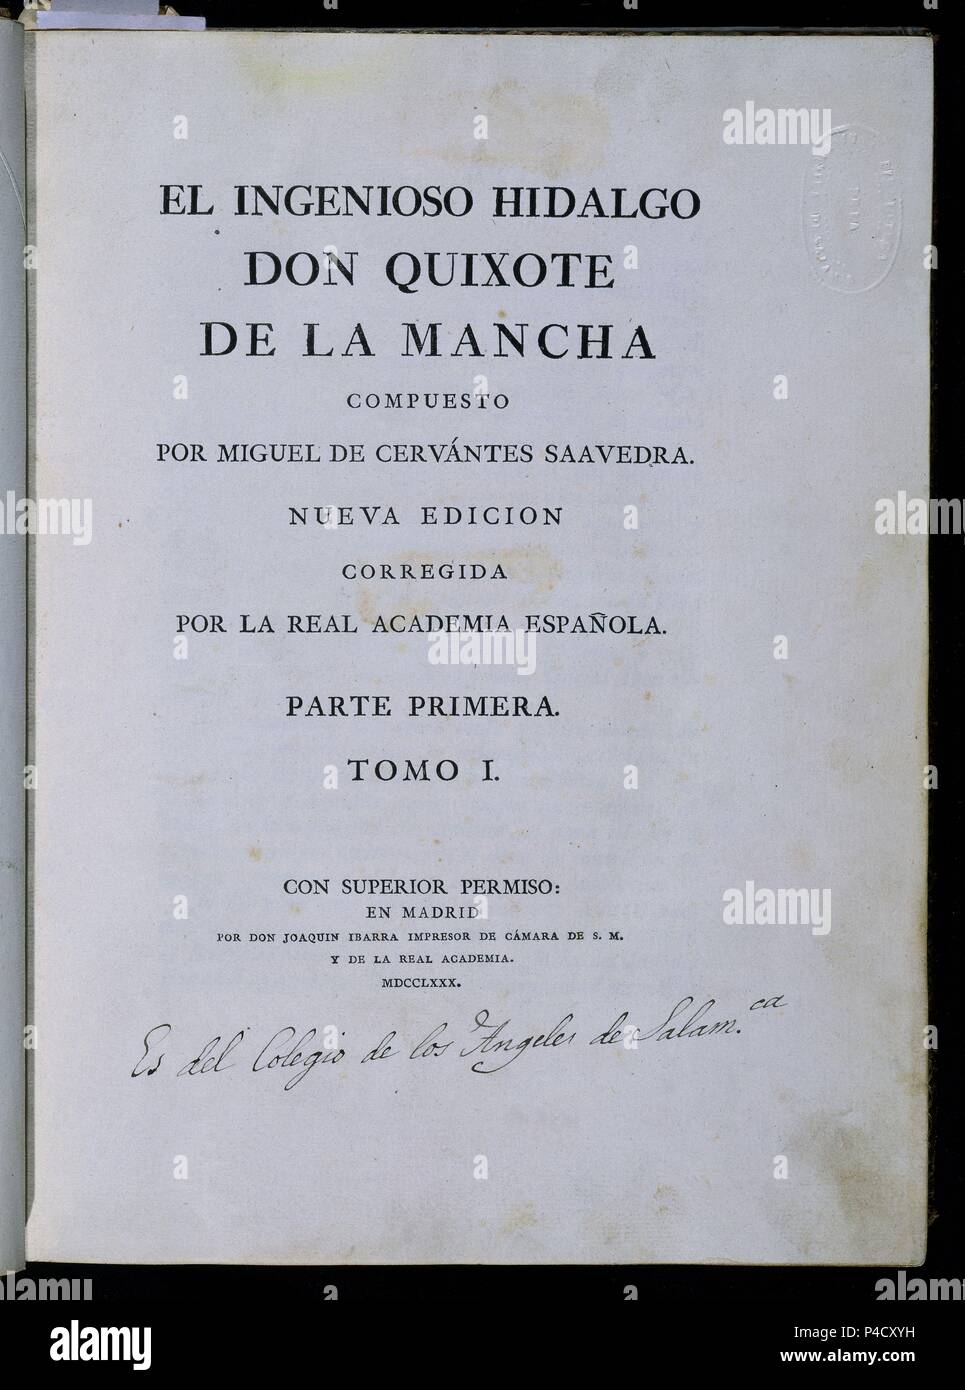 EL QUIJOTE DE LA MANCHA - 1 EDICION DE LA IMPRENTA IBARRA - 1780. Author:  Miguel de Cervantes Saavedra (1547-1616). Location: UNIVERSIDAD BIBLIOTECA,  SALAMANCA, SPAIN Stock Photo - Alamy